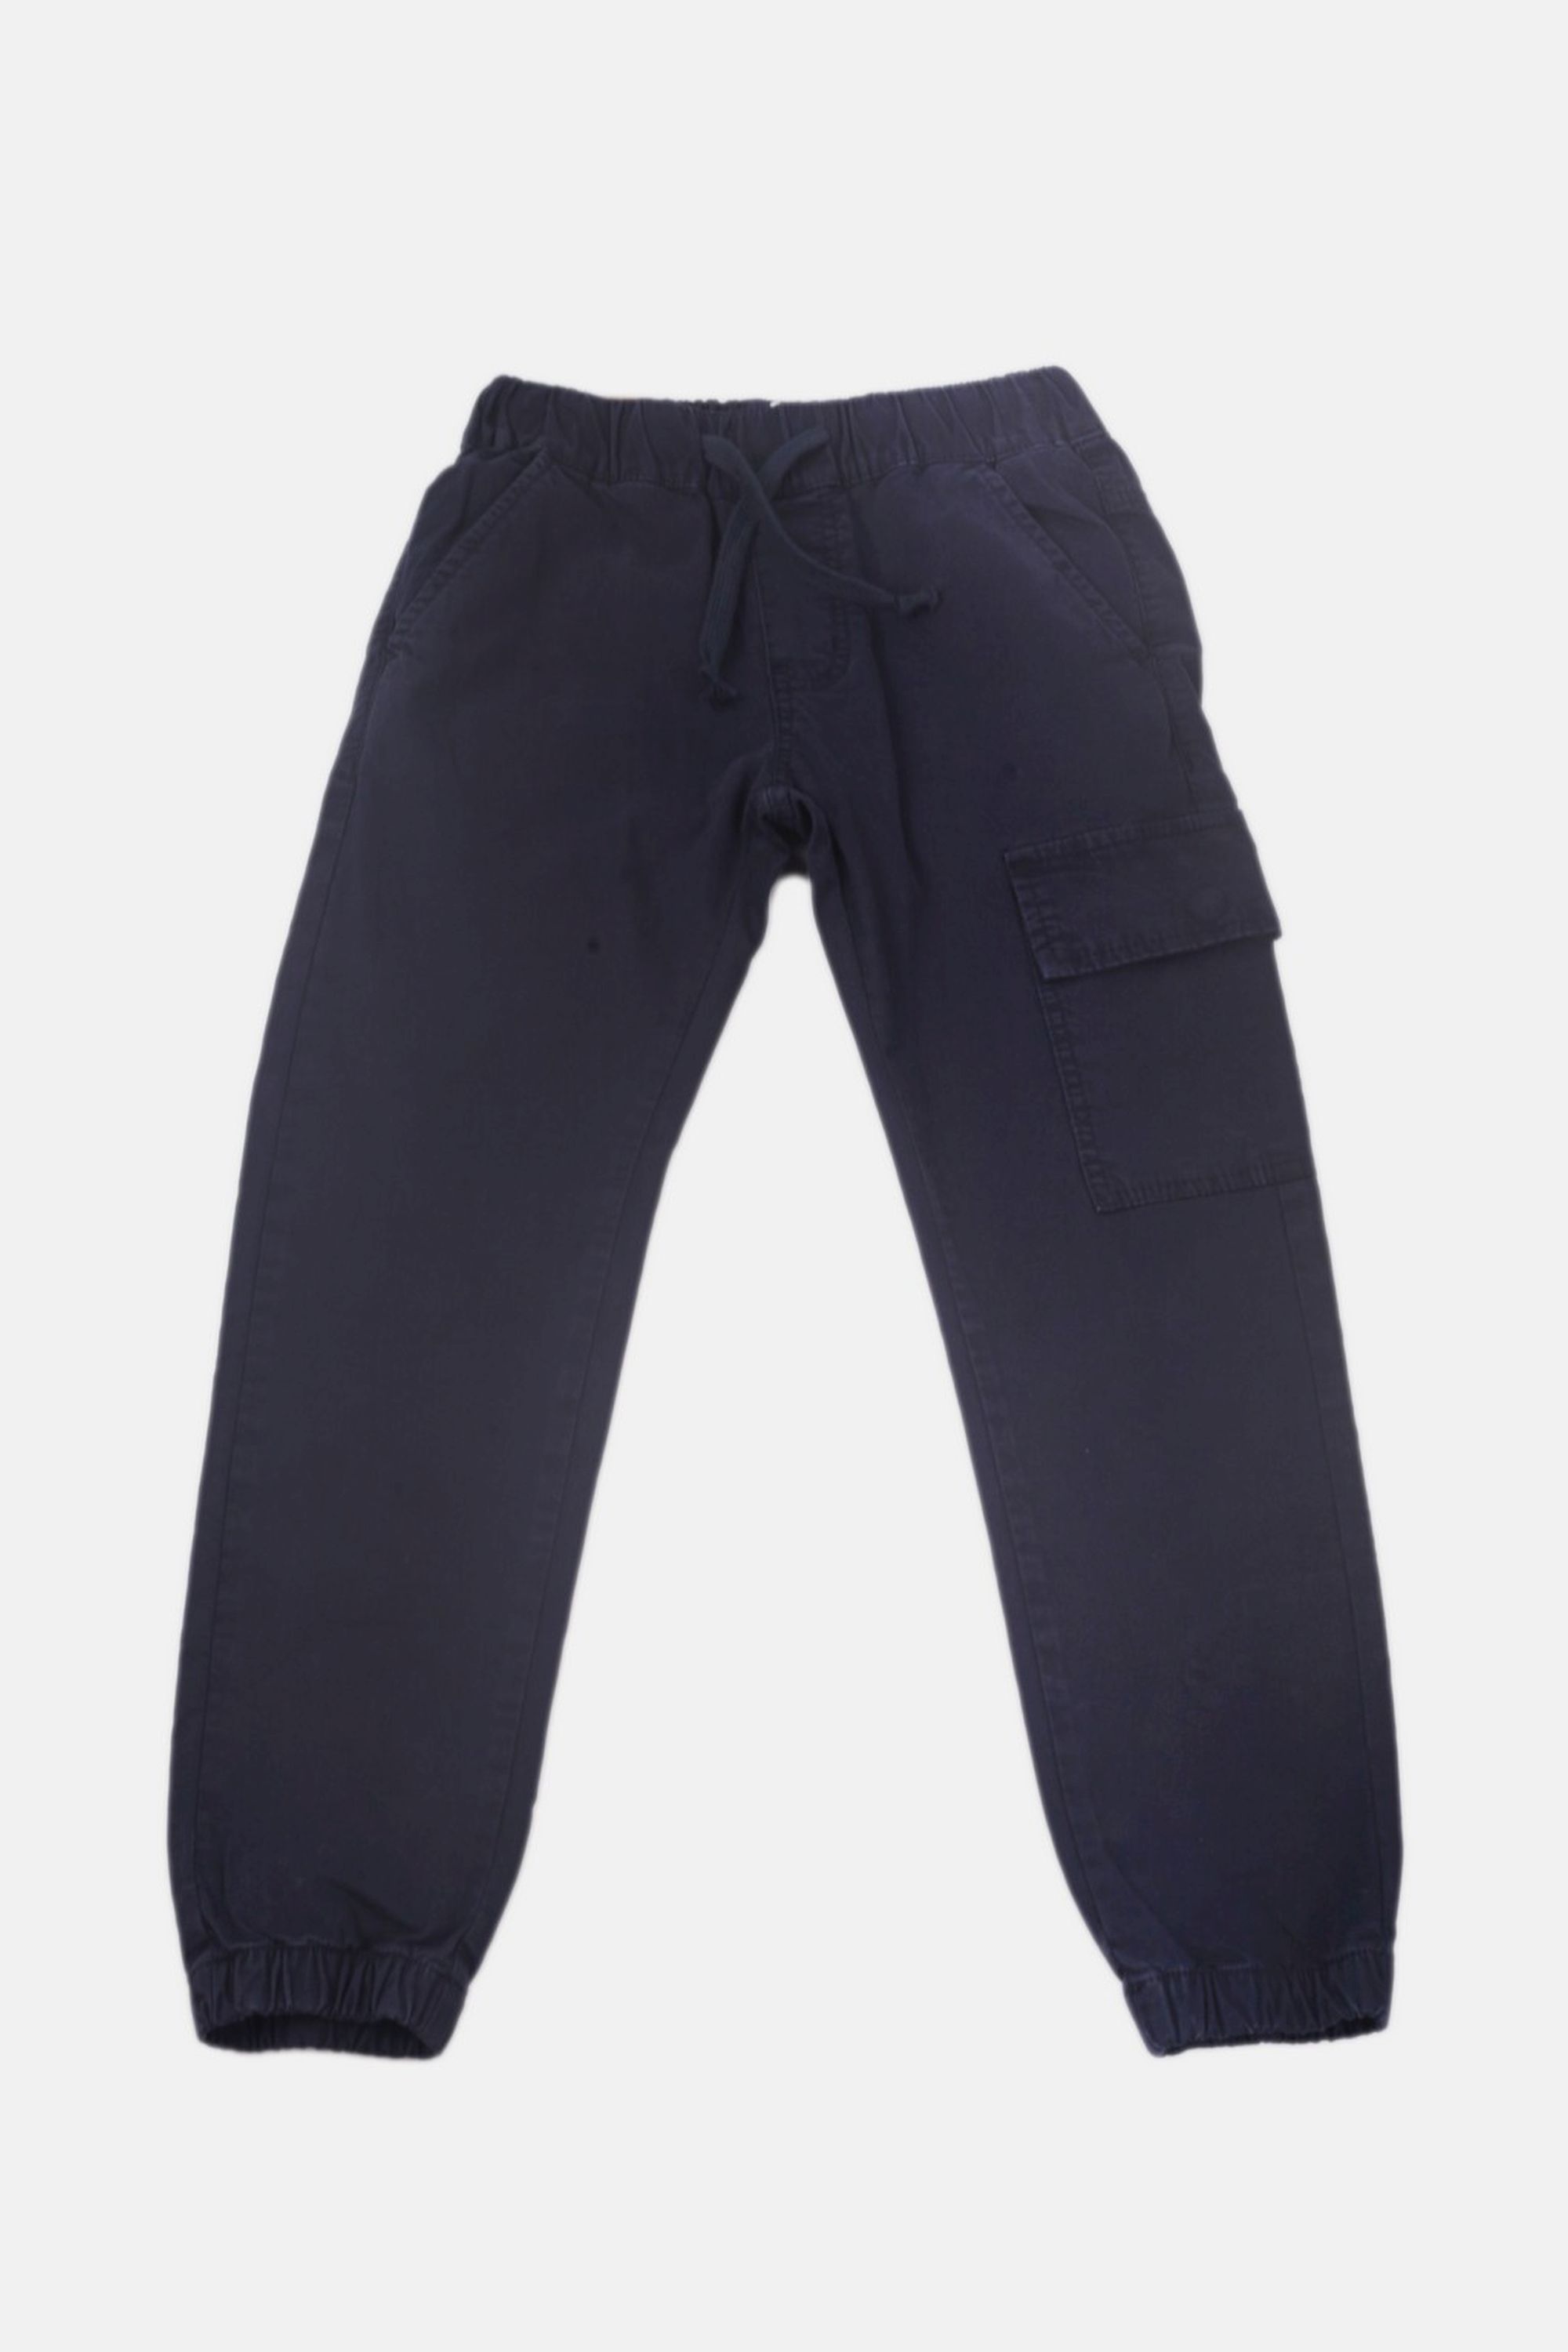 Chlapecké bavlněné kalhoty s gumou v pase/Hnědá, modrá Barva: Modrá, Velikost: vel. 14 (150/158 cm)